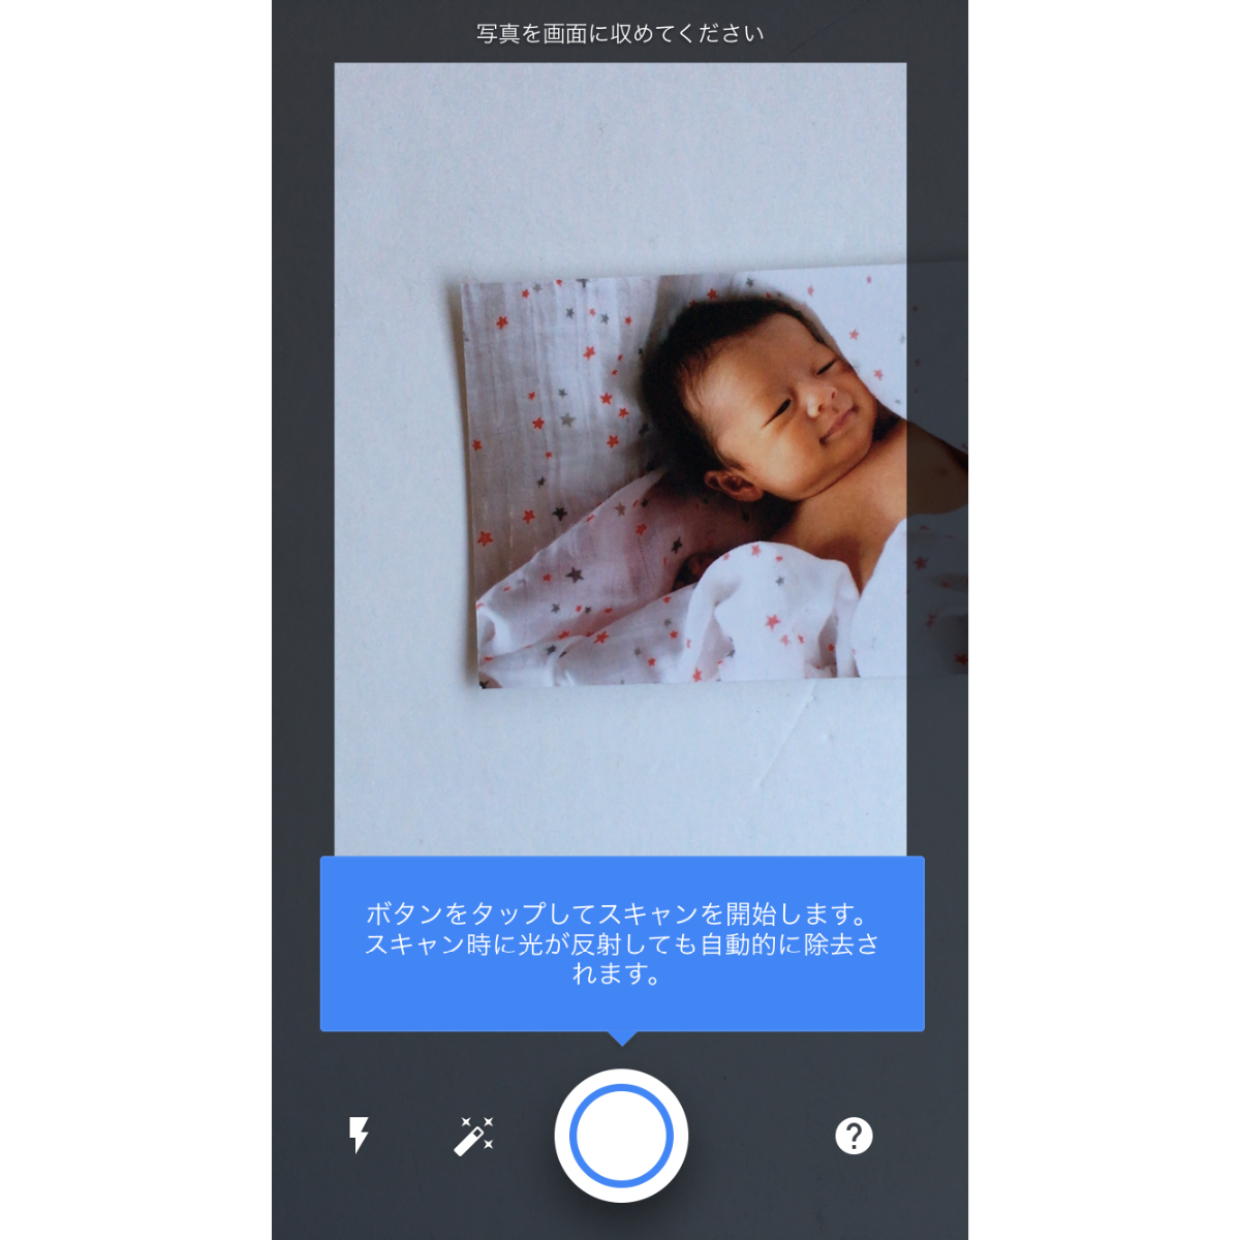  紙焼き写真をスマホで手軽にデータ化できるアプリ【フォトスキャン】がすごい！ 